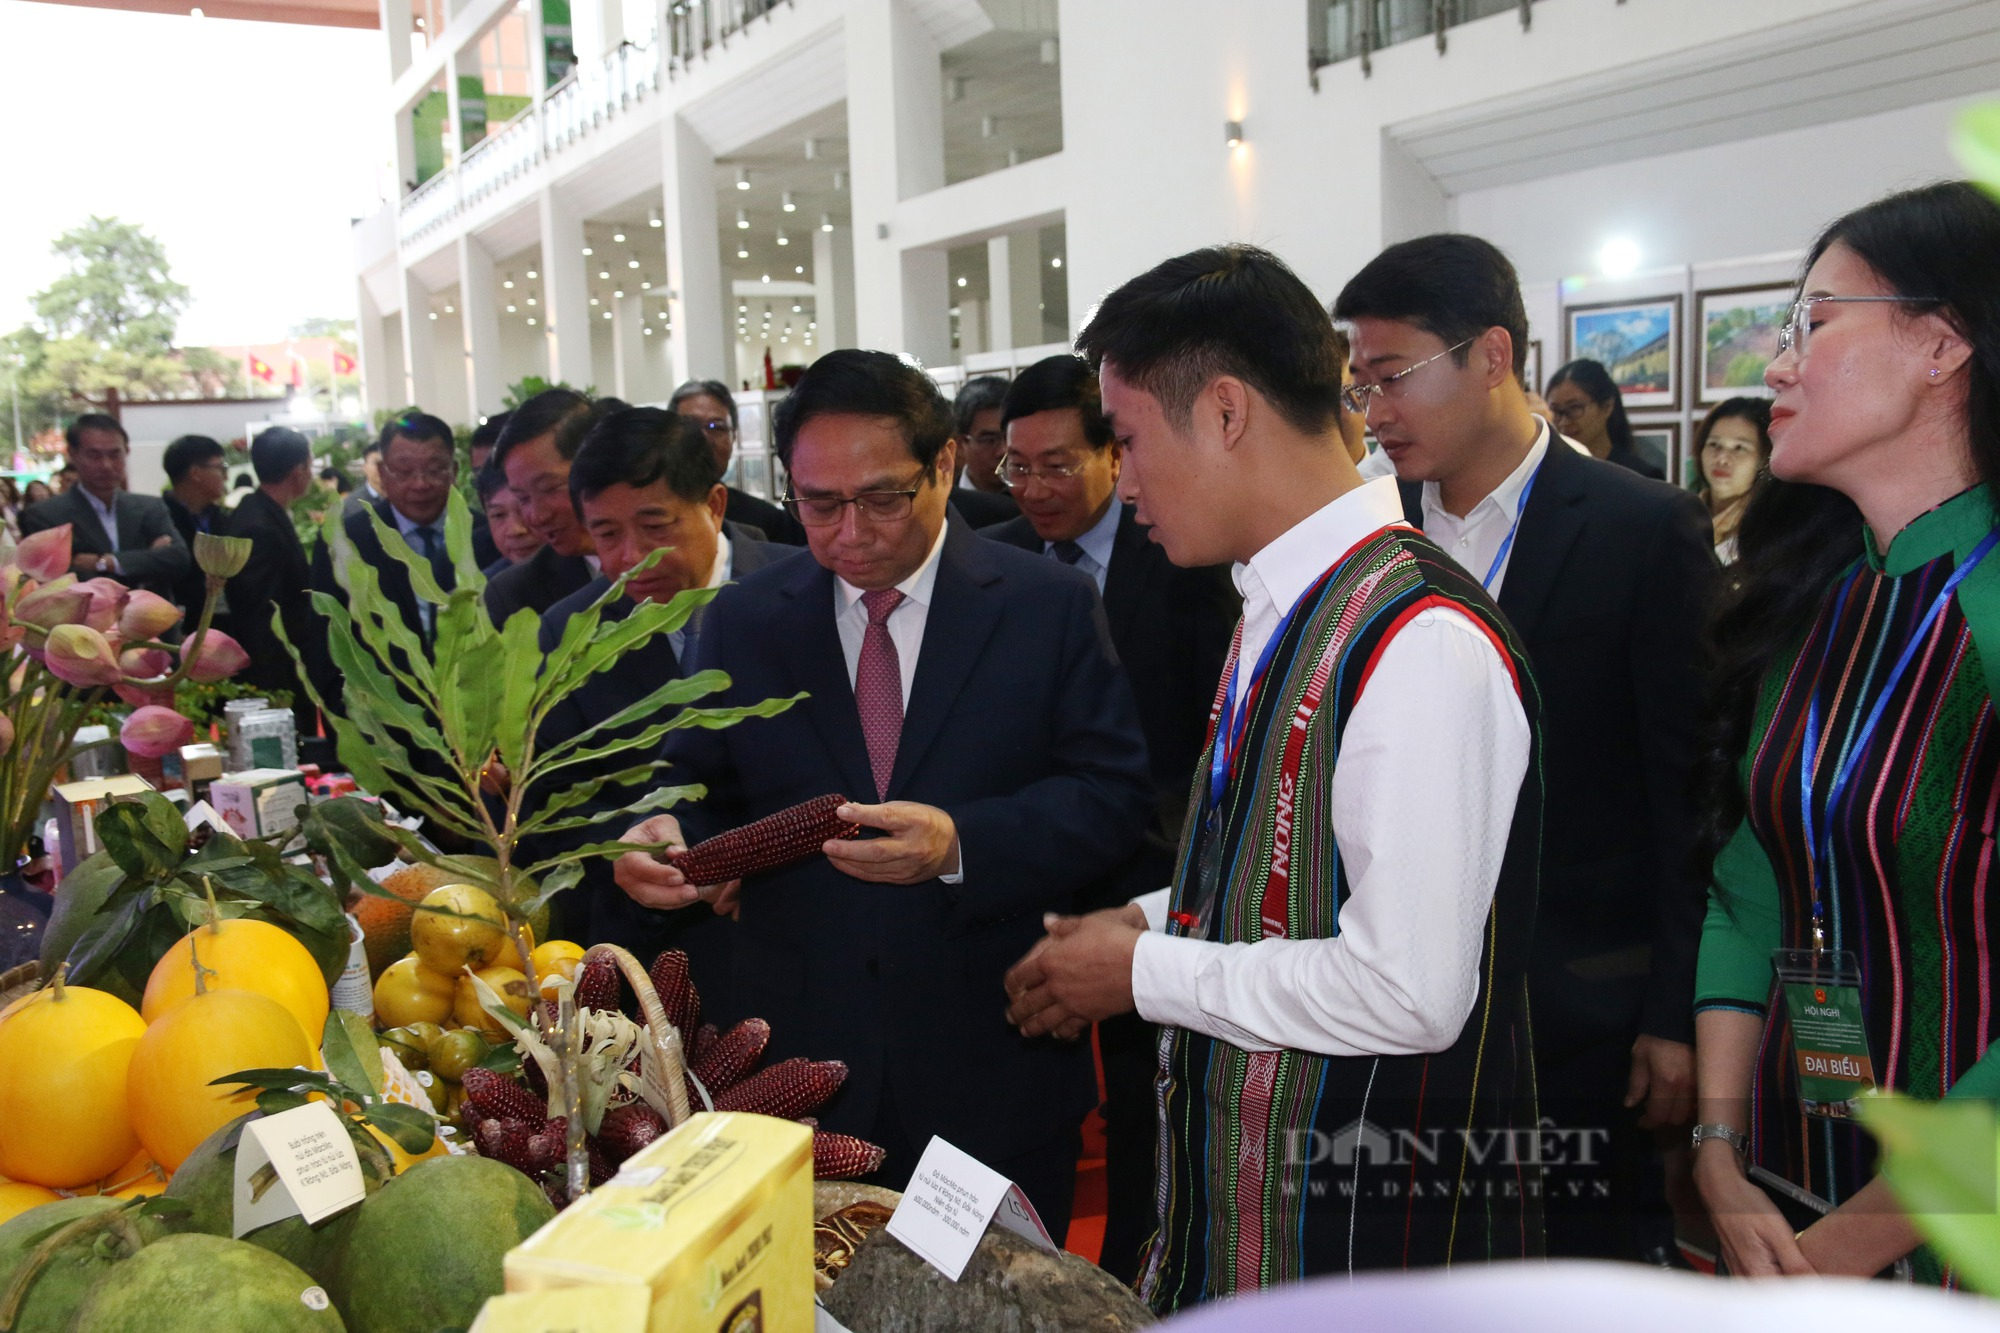 Thủ tướng Chính phủ Phạm Minh Chính cắt băng khai mạc triển lãm ảnh Tây Nguyên xanh hài hòa - bền vững - Ảnh 7.